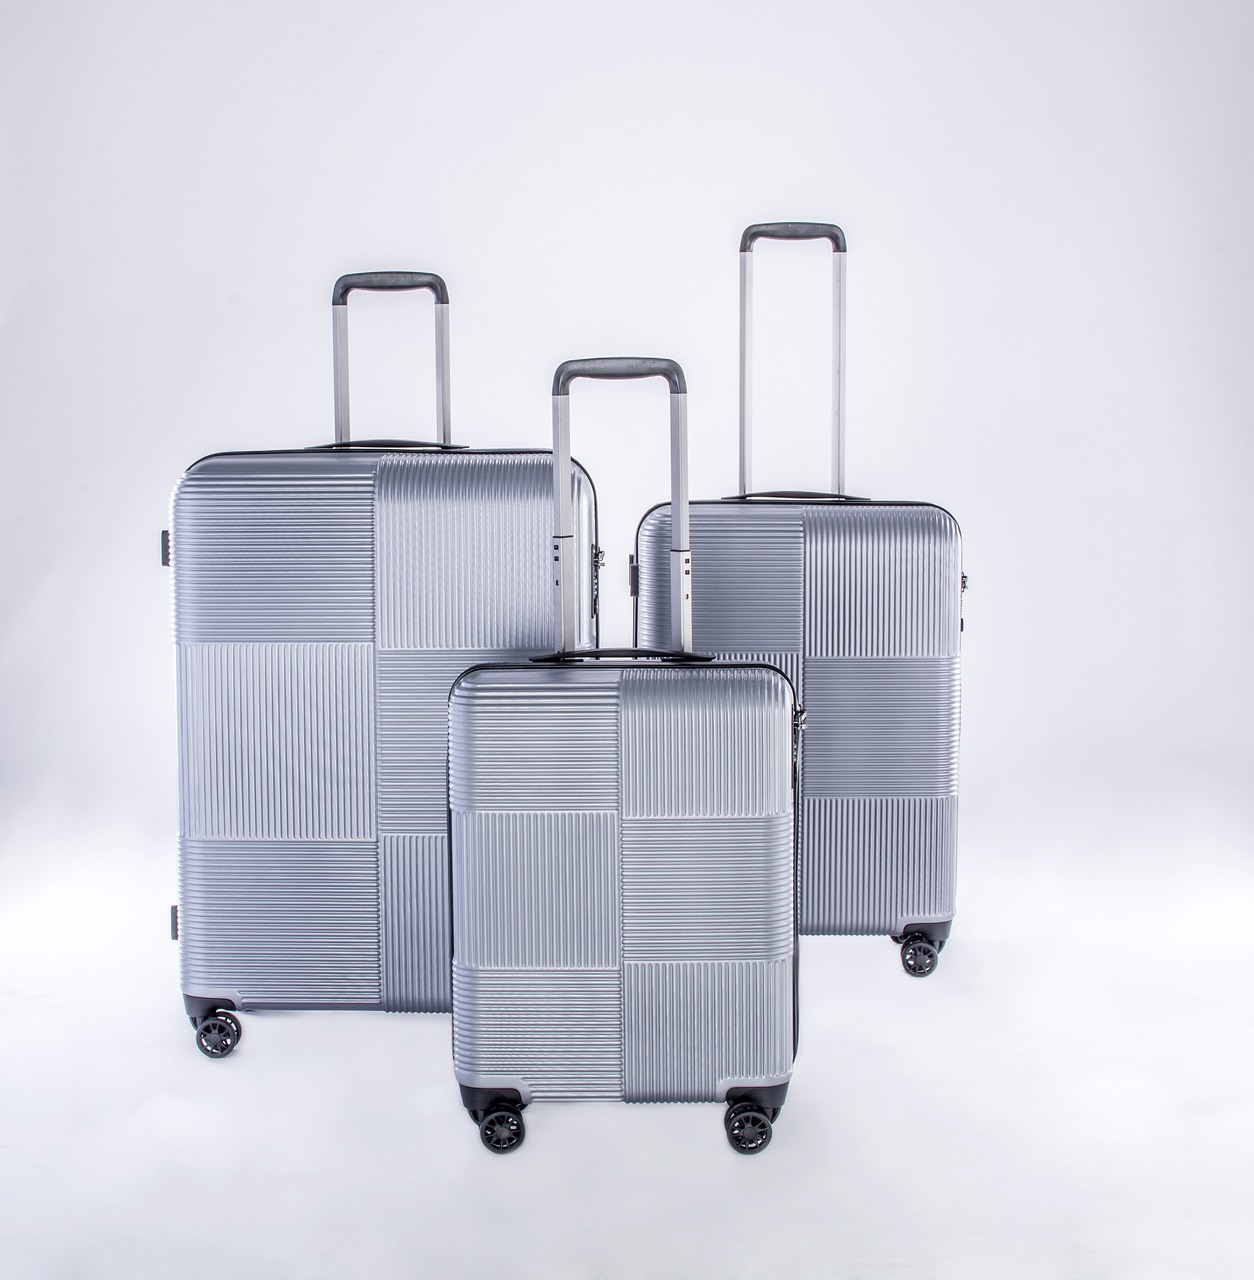 luggage case case metallic luguage free photo